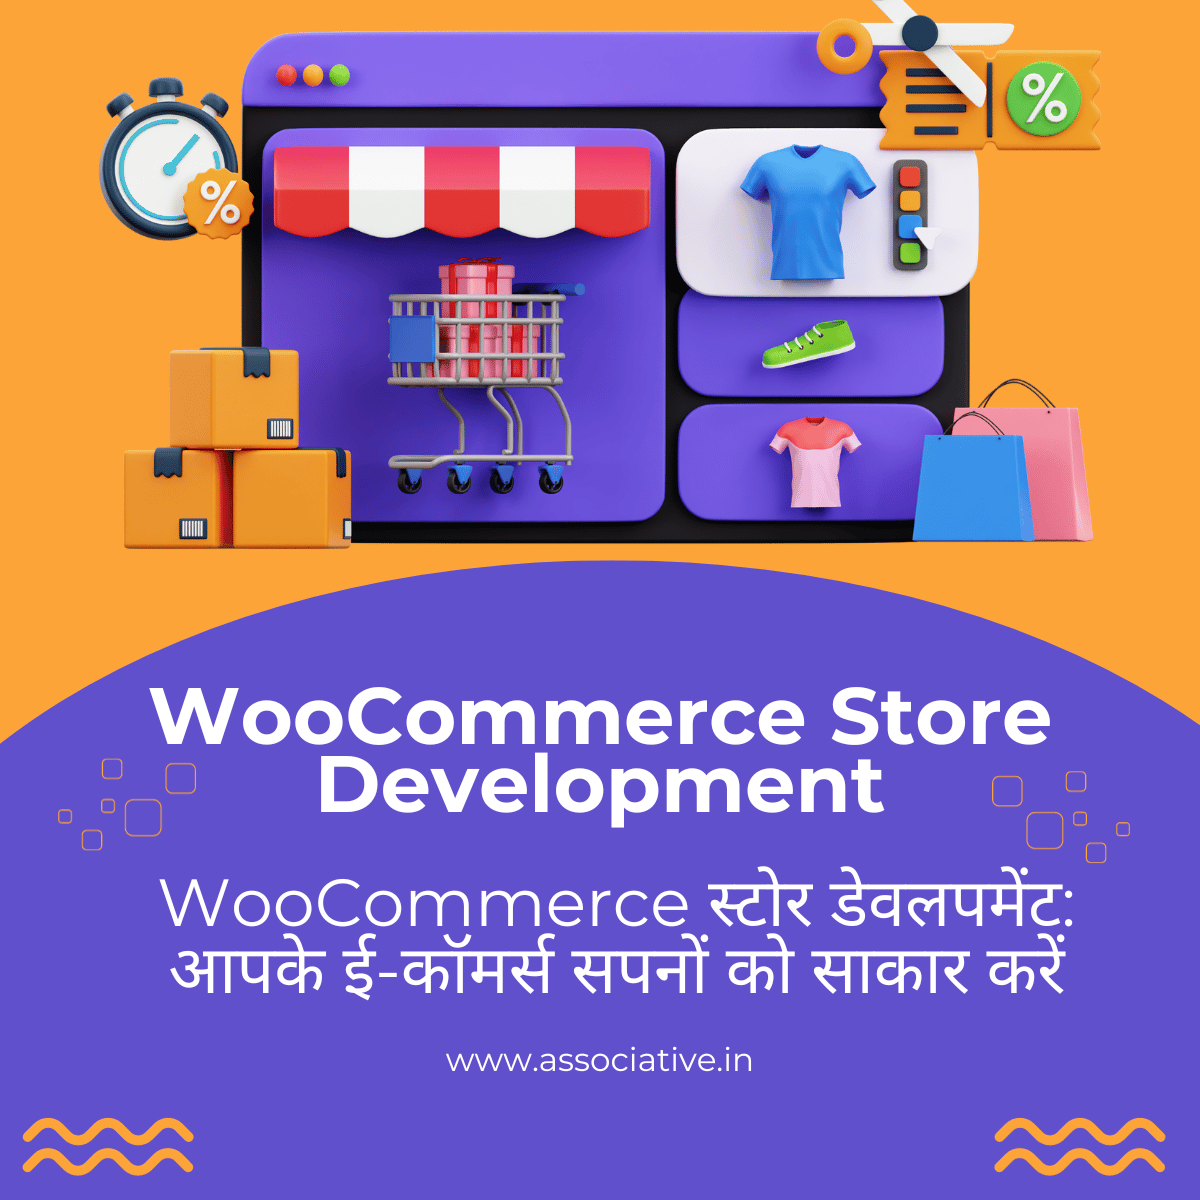 WooCommerce Store Development WooCommerce स्टोर डेवलपमेंट: आपके ई-कॉमर्स सपनों को साकार करें